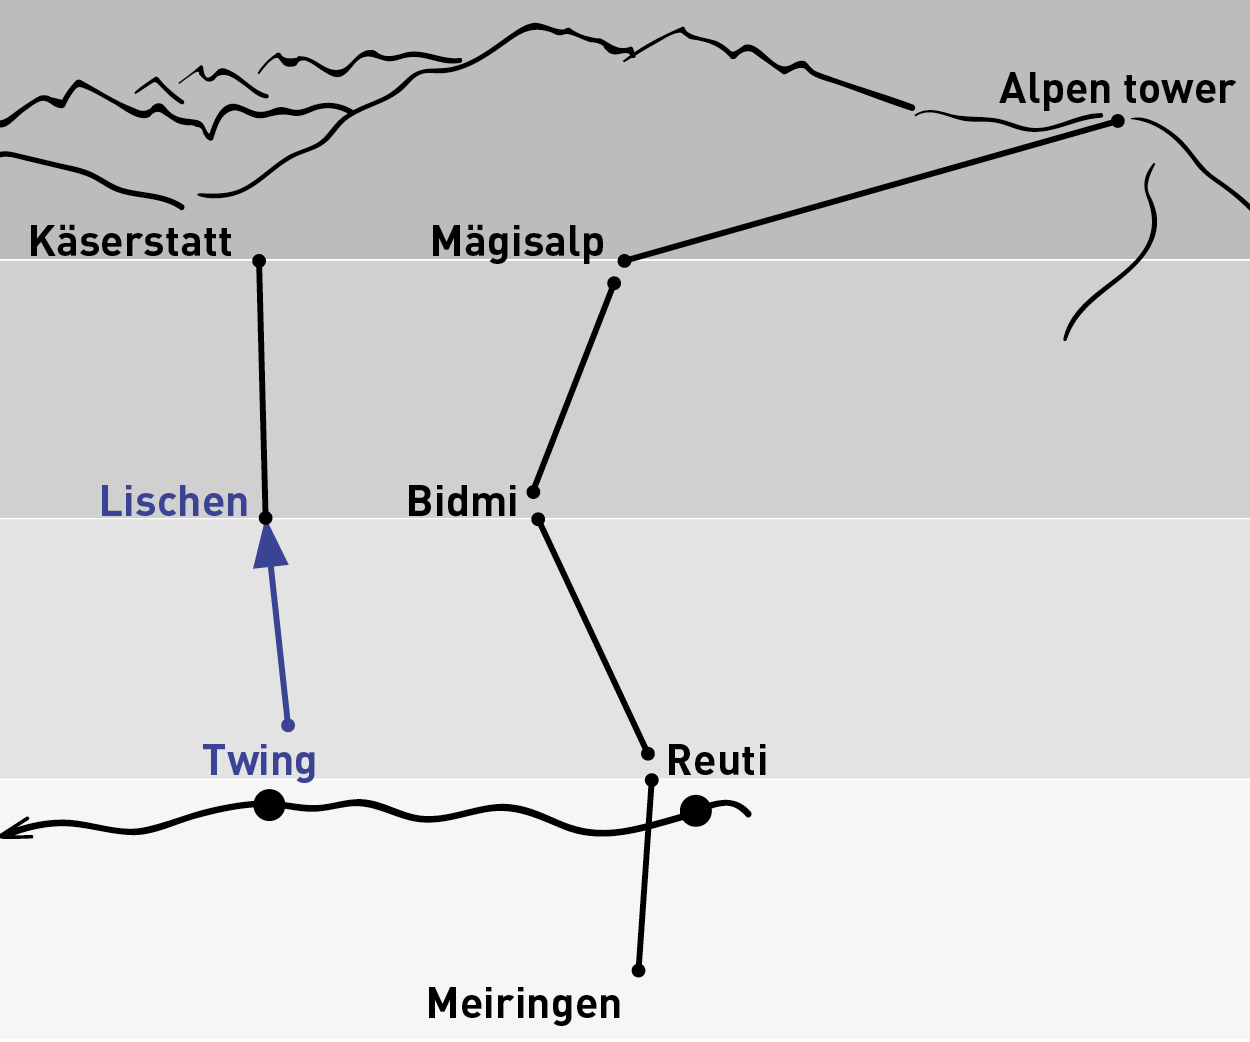 Twing - Lischen | One-way trip